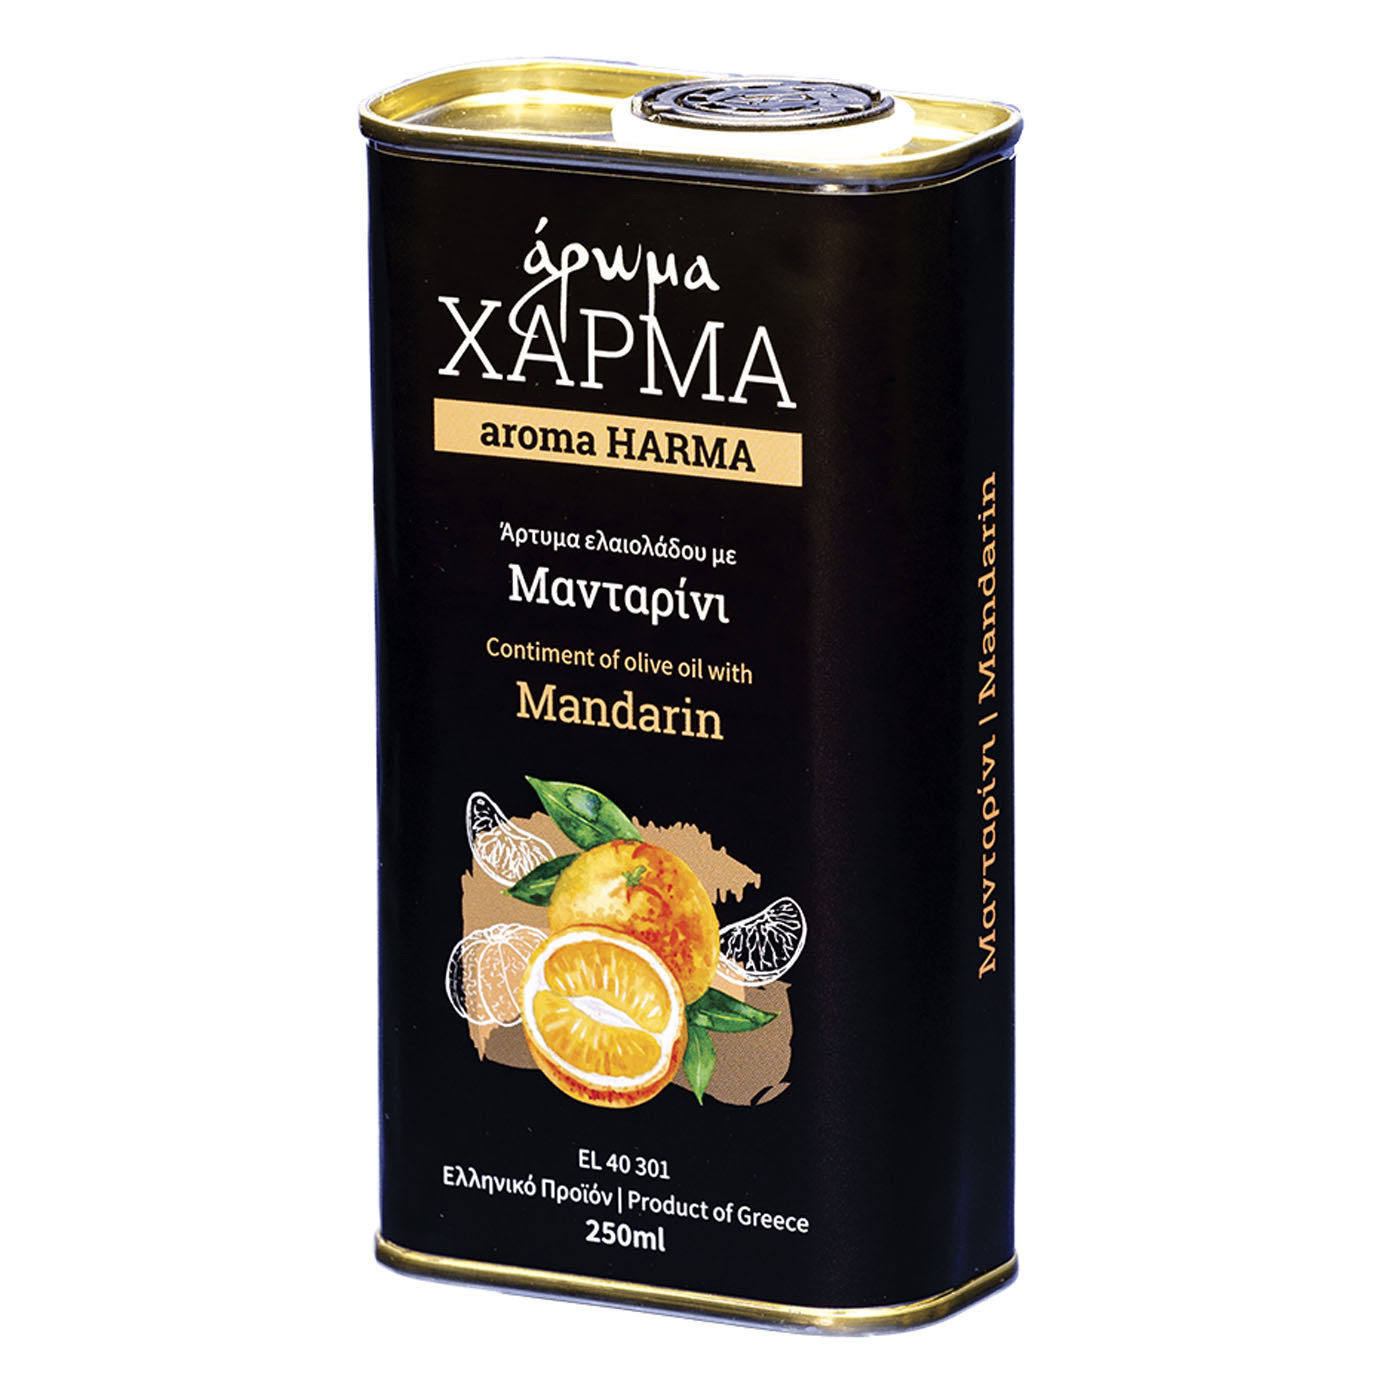 Άρτυμα ελαιόλαδου με μανταρίνι "άρωμα Χάρμα" 250 ml